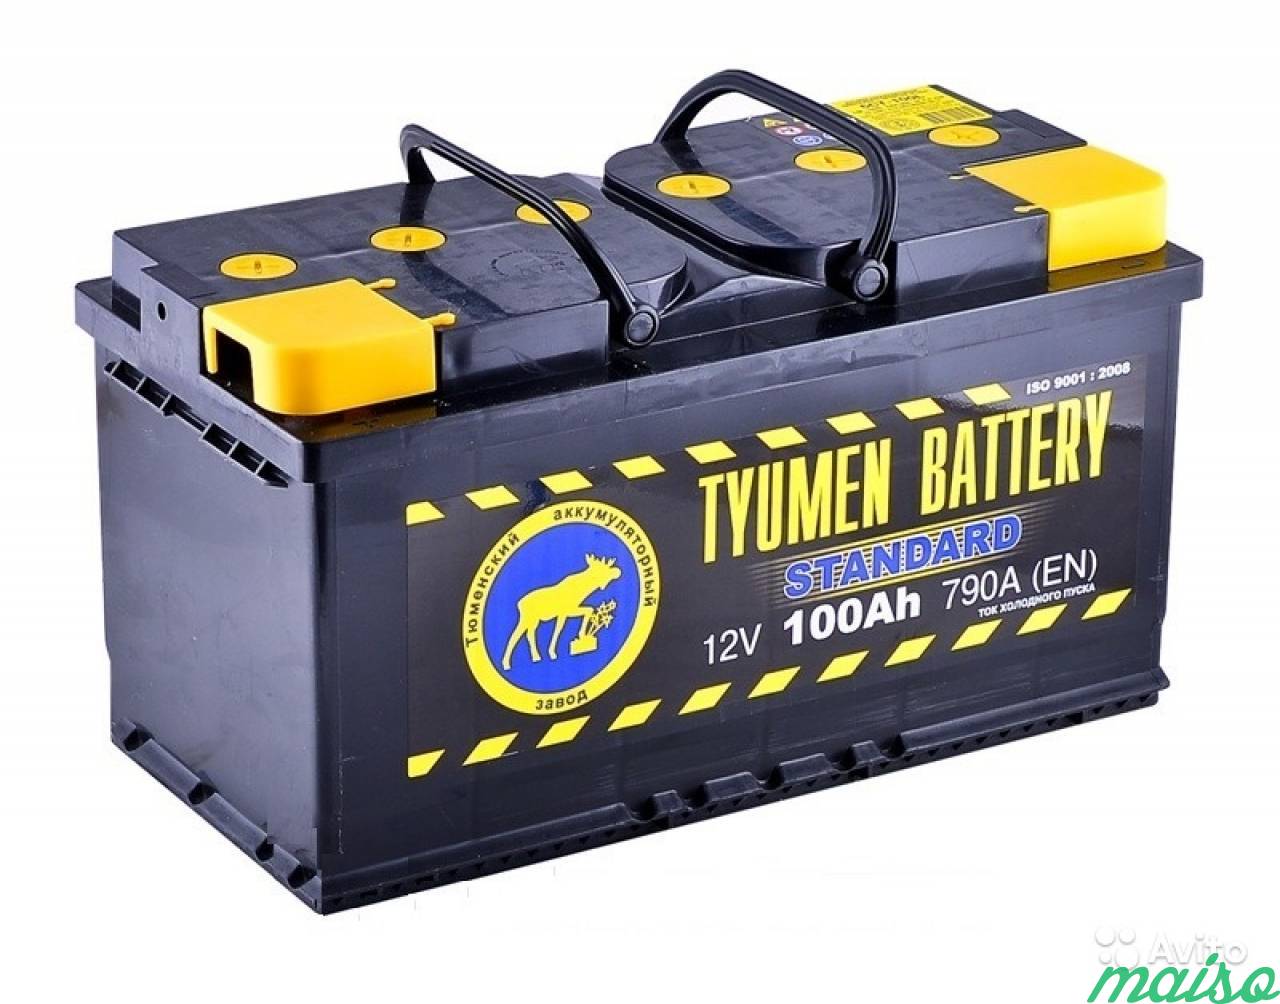 Недорогую акб. АКБ Tyumen Battery Standard 100ah о/п (-/+). Аккумулятор автомобильный 100ач 110 Ач. АКБ Тюмень 6ст-90l п.п. 720акупить. Аккумулятор Tyumen Battery 6ст-100l Standard п.п..